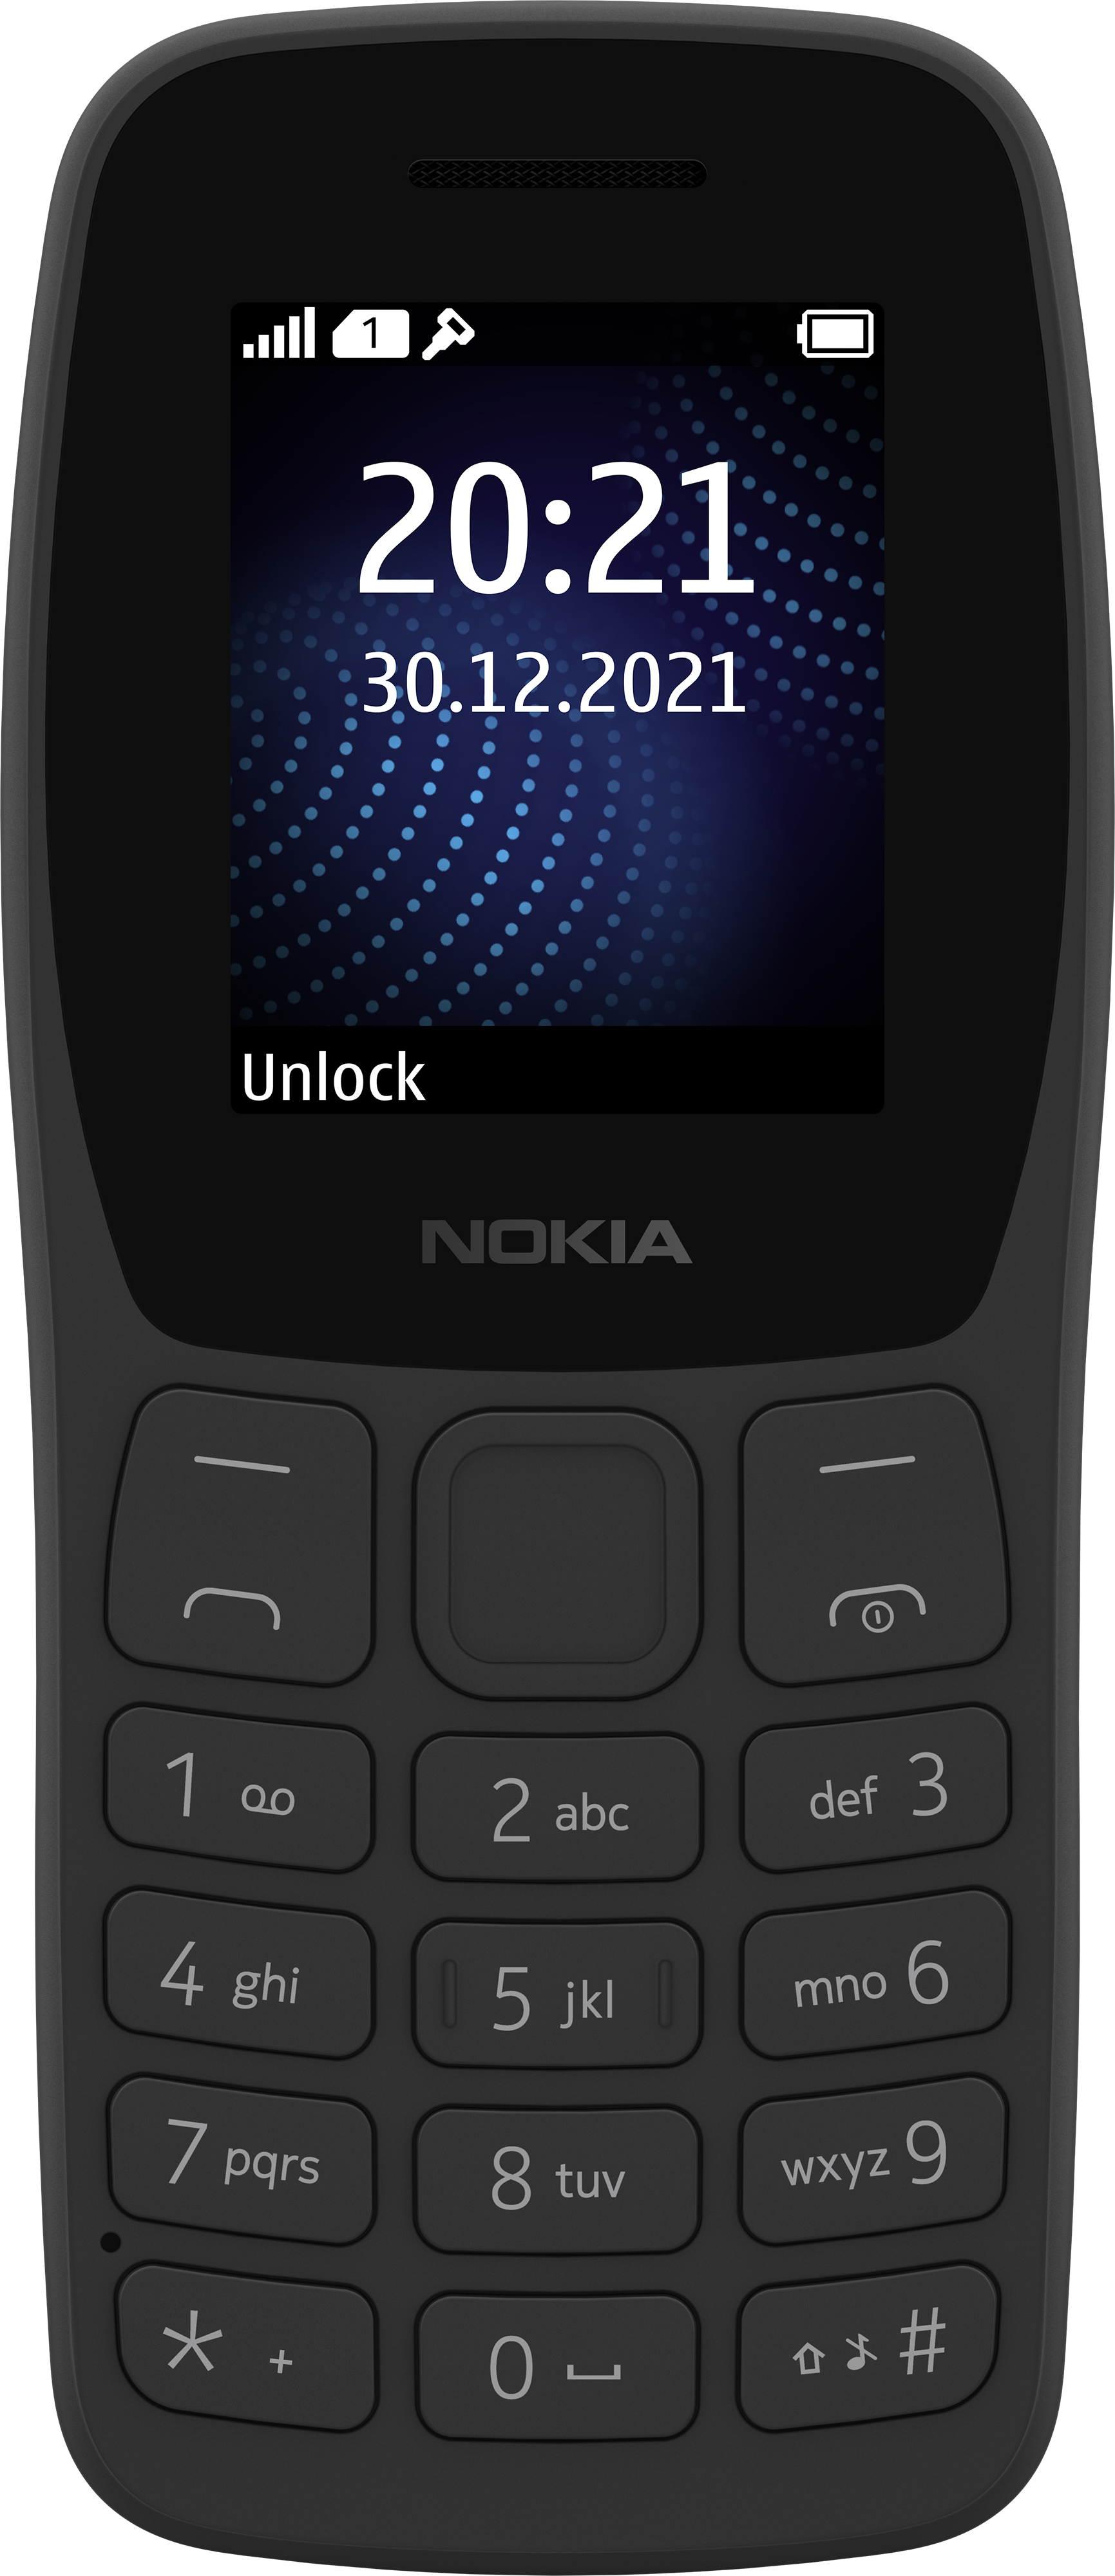 Bạn đang muốn tìm hiểu về các sản phẩm điện thoại cơ bản của Nokia và so sánh giá để lựa chọn được sản phẩm phù hợp với nhu cầu và ngân sách của mình? Truy cập ngay vào trang web của chúng tôi để biết thêm thông tin chi tiết về các sản phẩm điện thoại Nokia cơ bản và cập nhật các thông tin giá cả mới nhất.